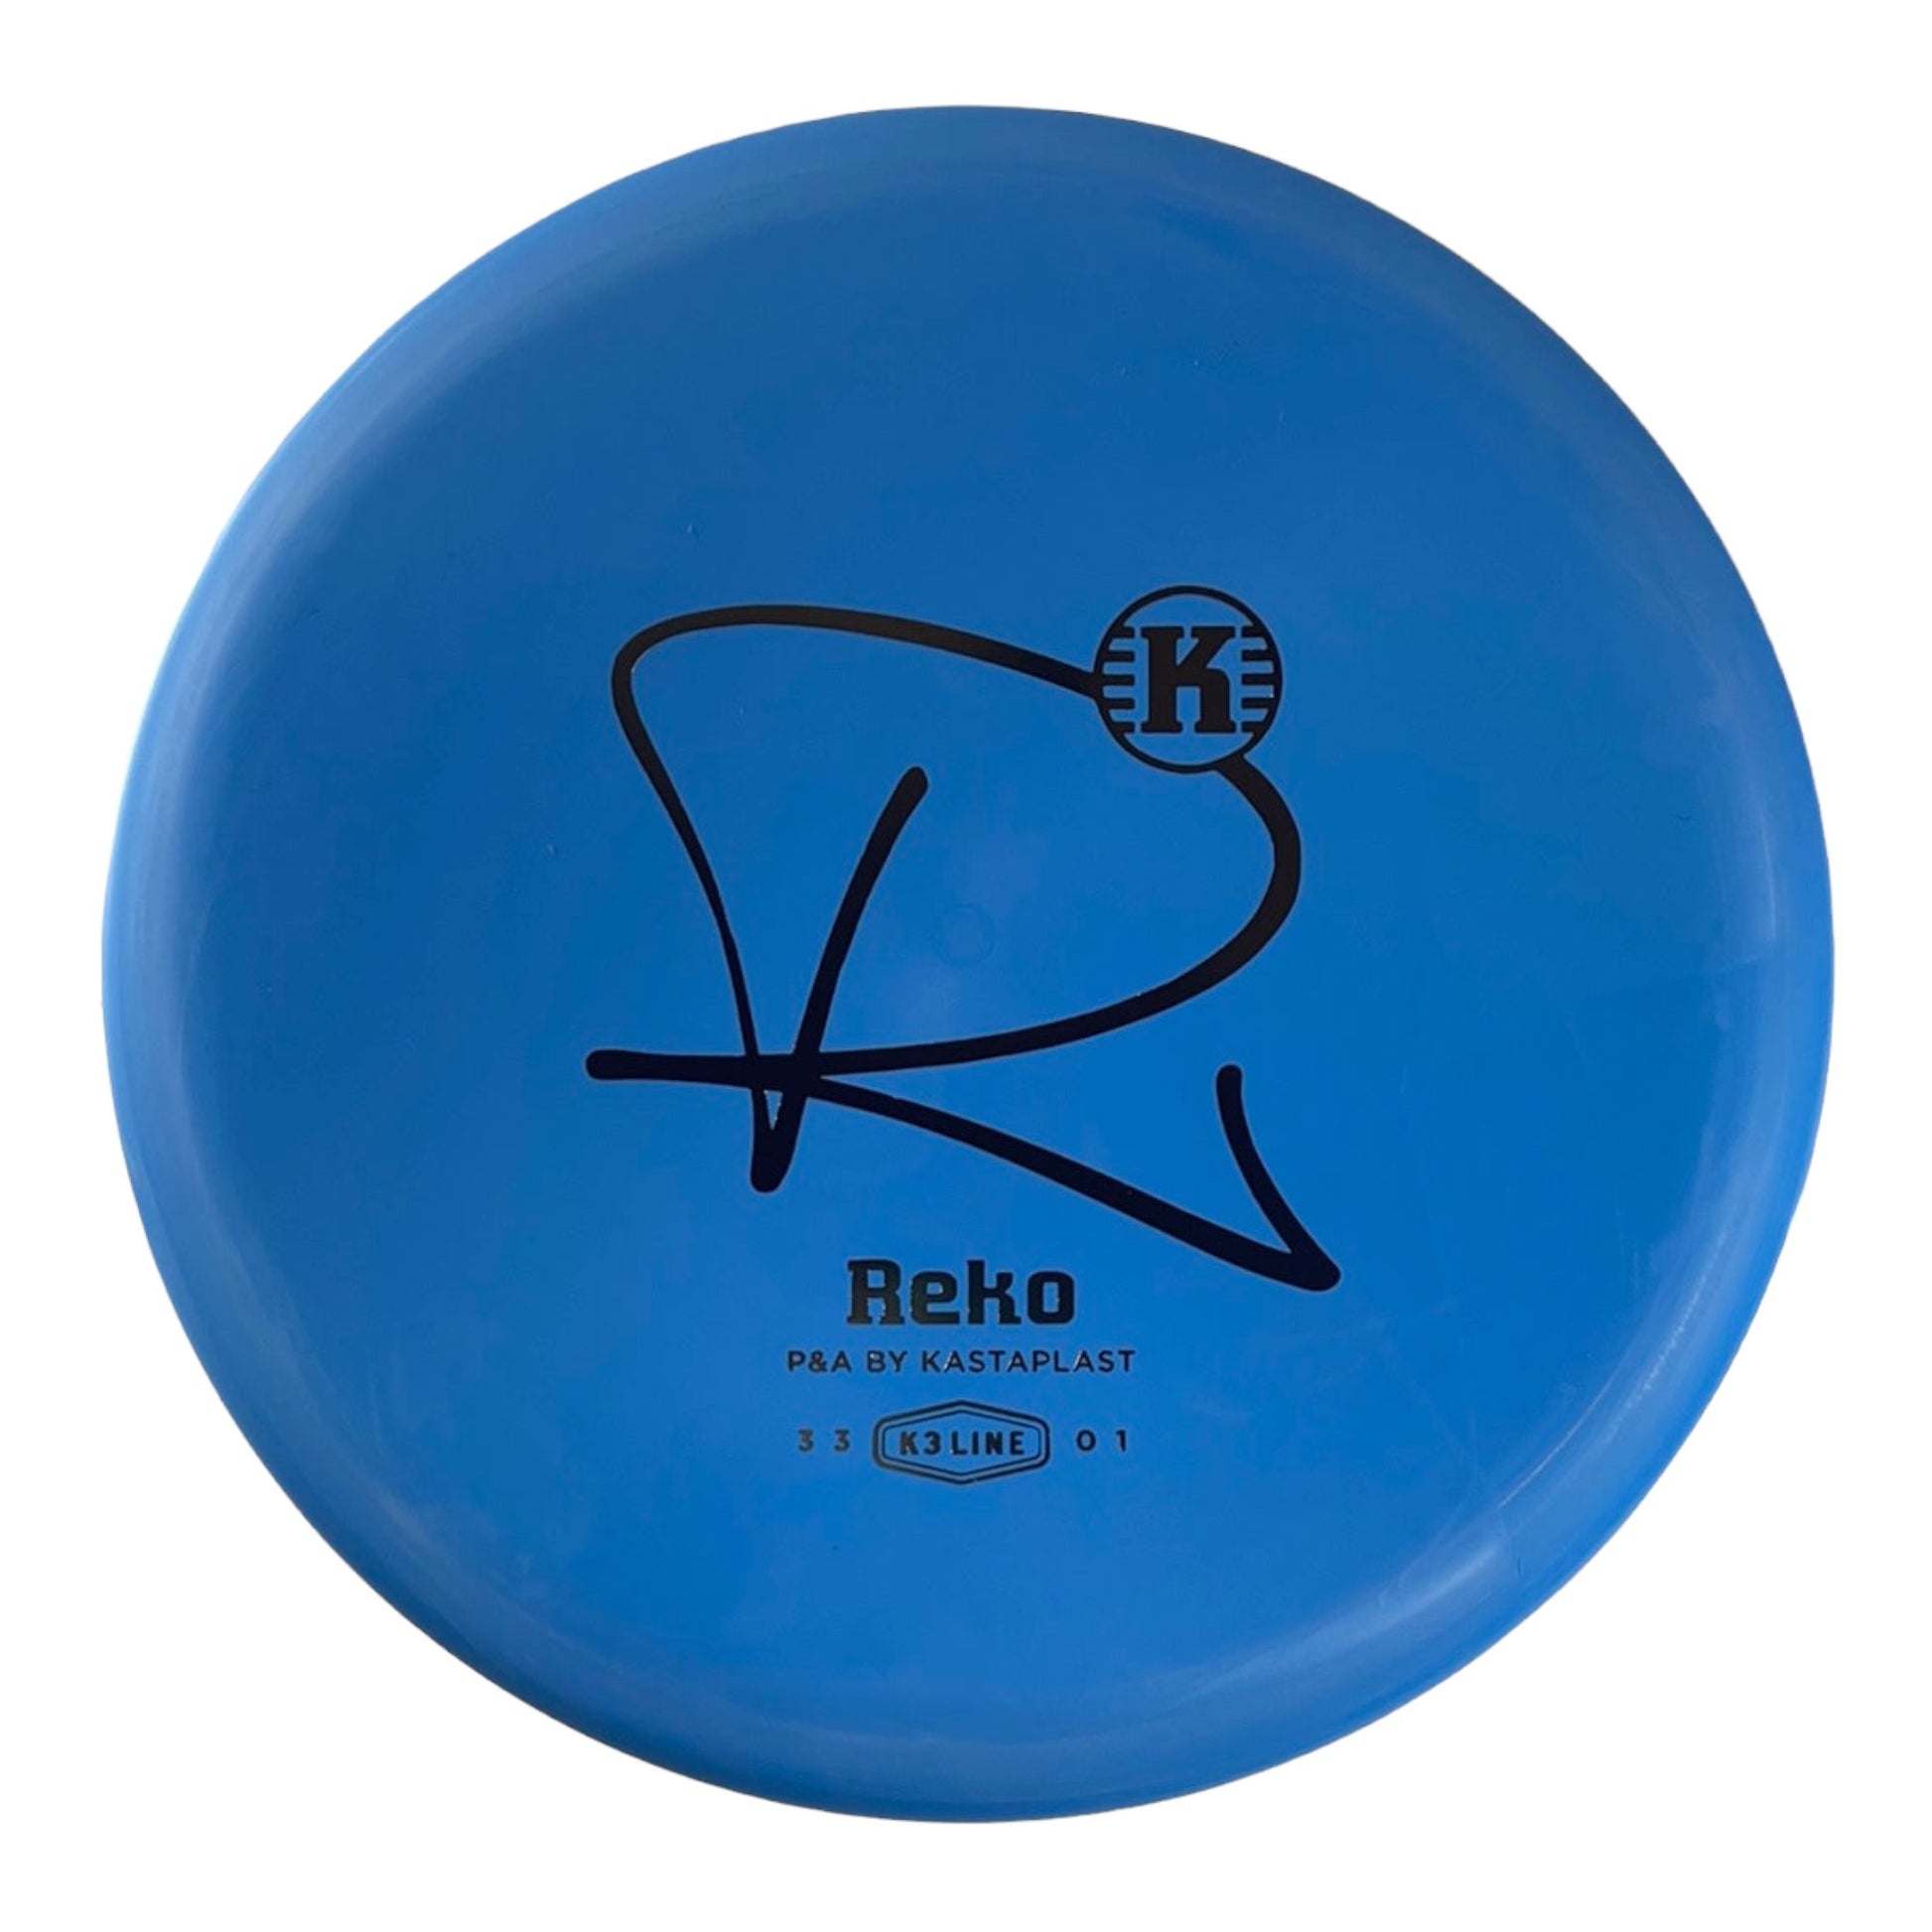 Kastaplast Reko | K3 | Blue/Gold 172g Disc Golf